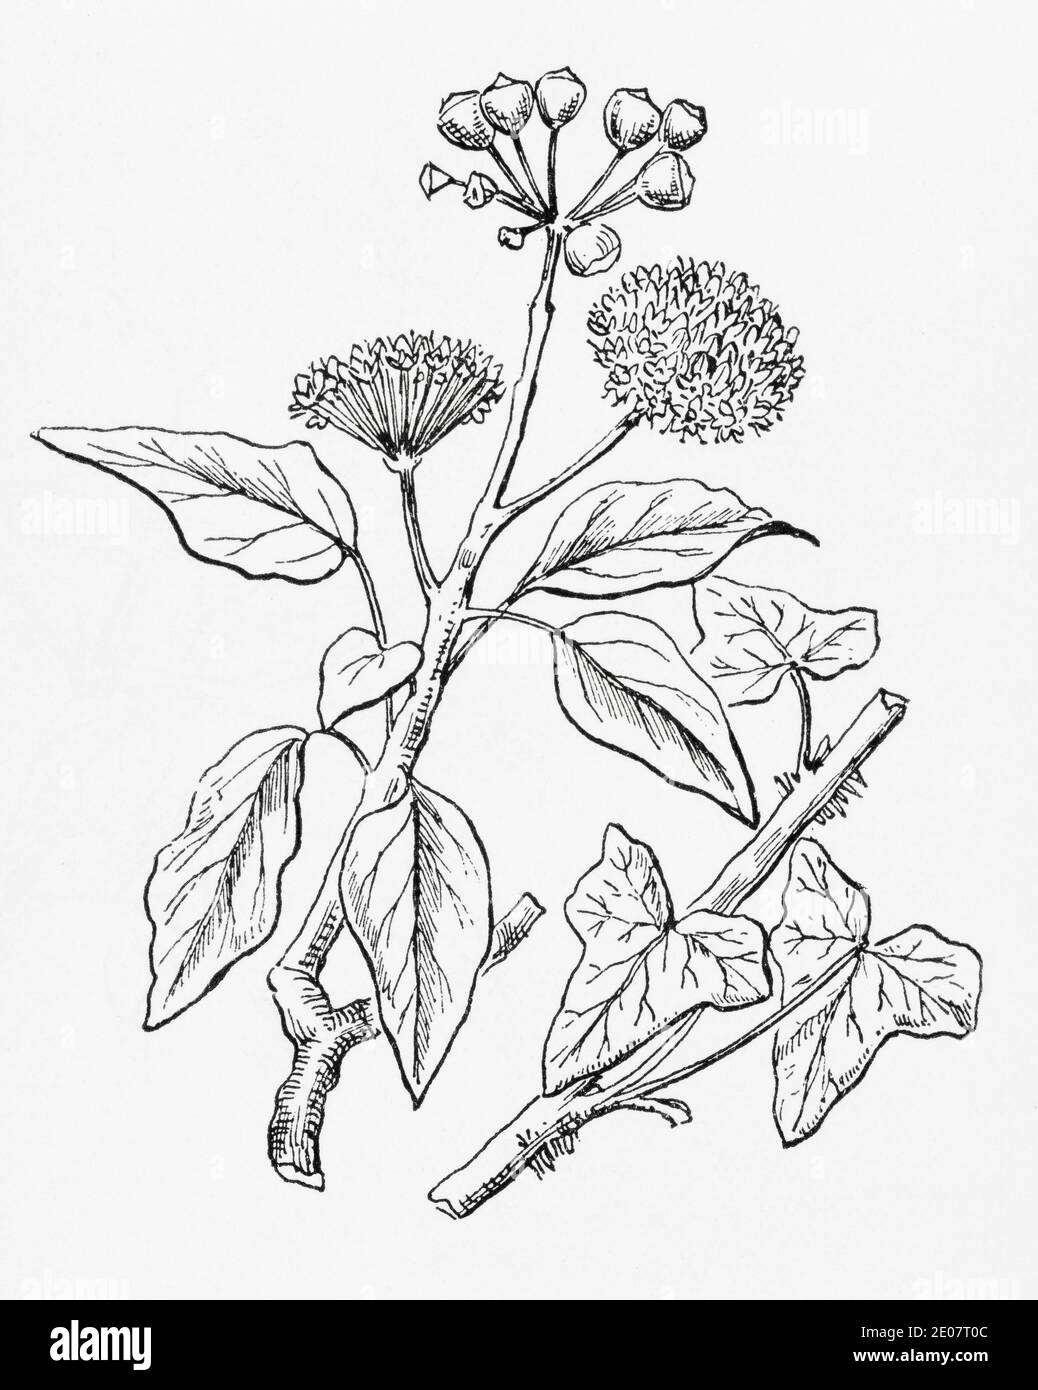 Alte botanische Illustration Gravur von Ivy / Hedera Helix. Traditionelle Heilkräuter Pflanze. Siehe Hinweise Stockfoto